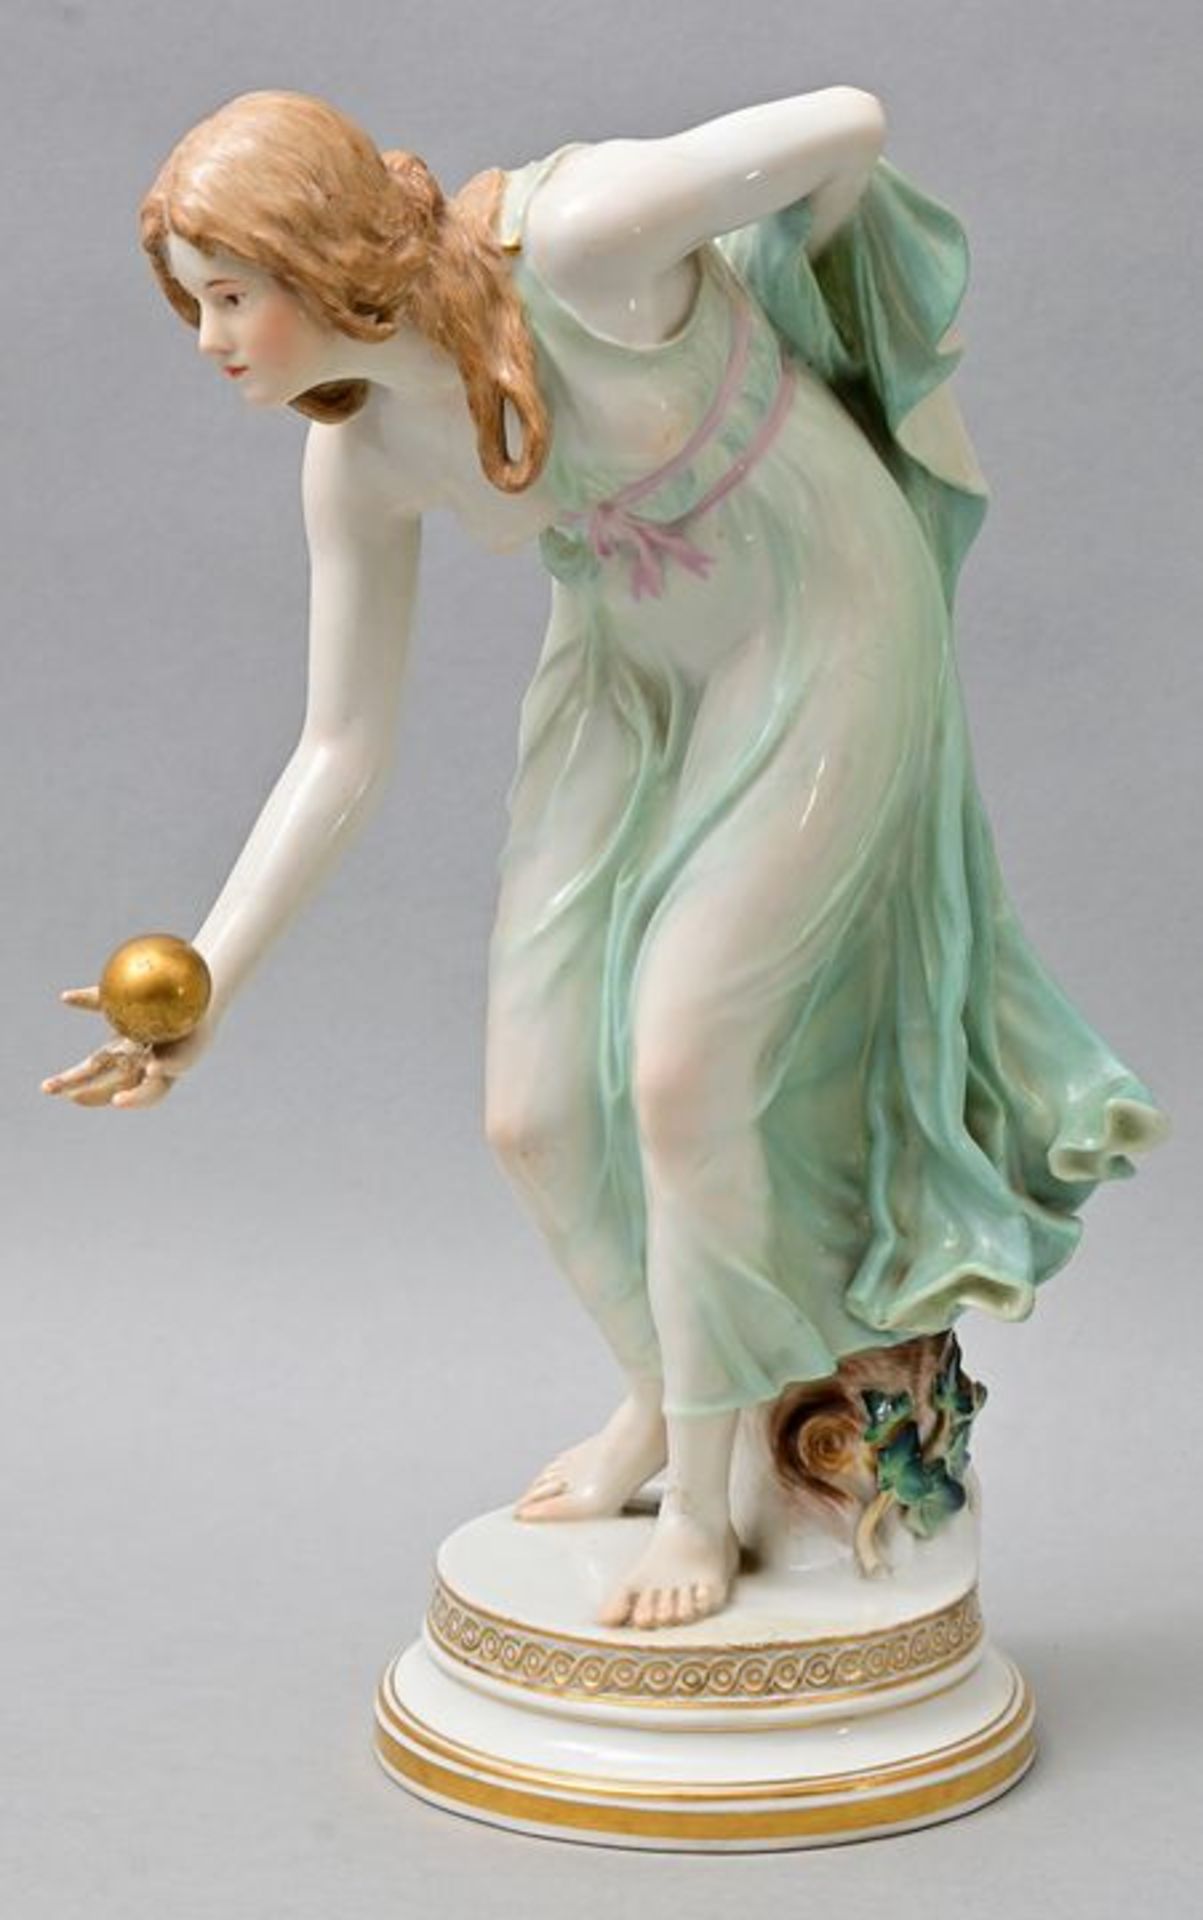 Porzellanfigur "Kugelspielerin", Meissen / porcelain figure